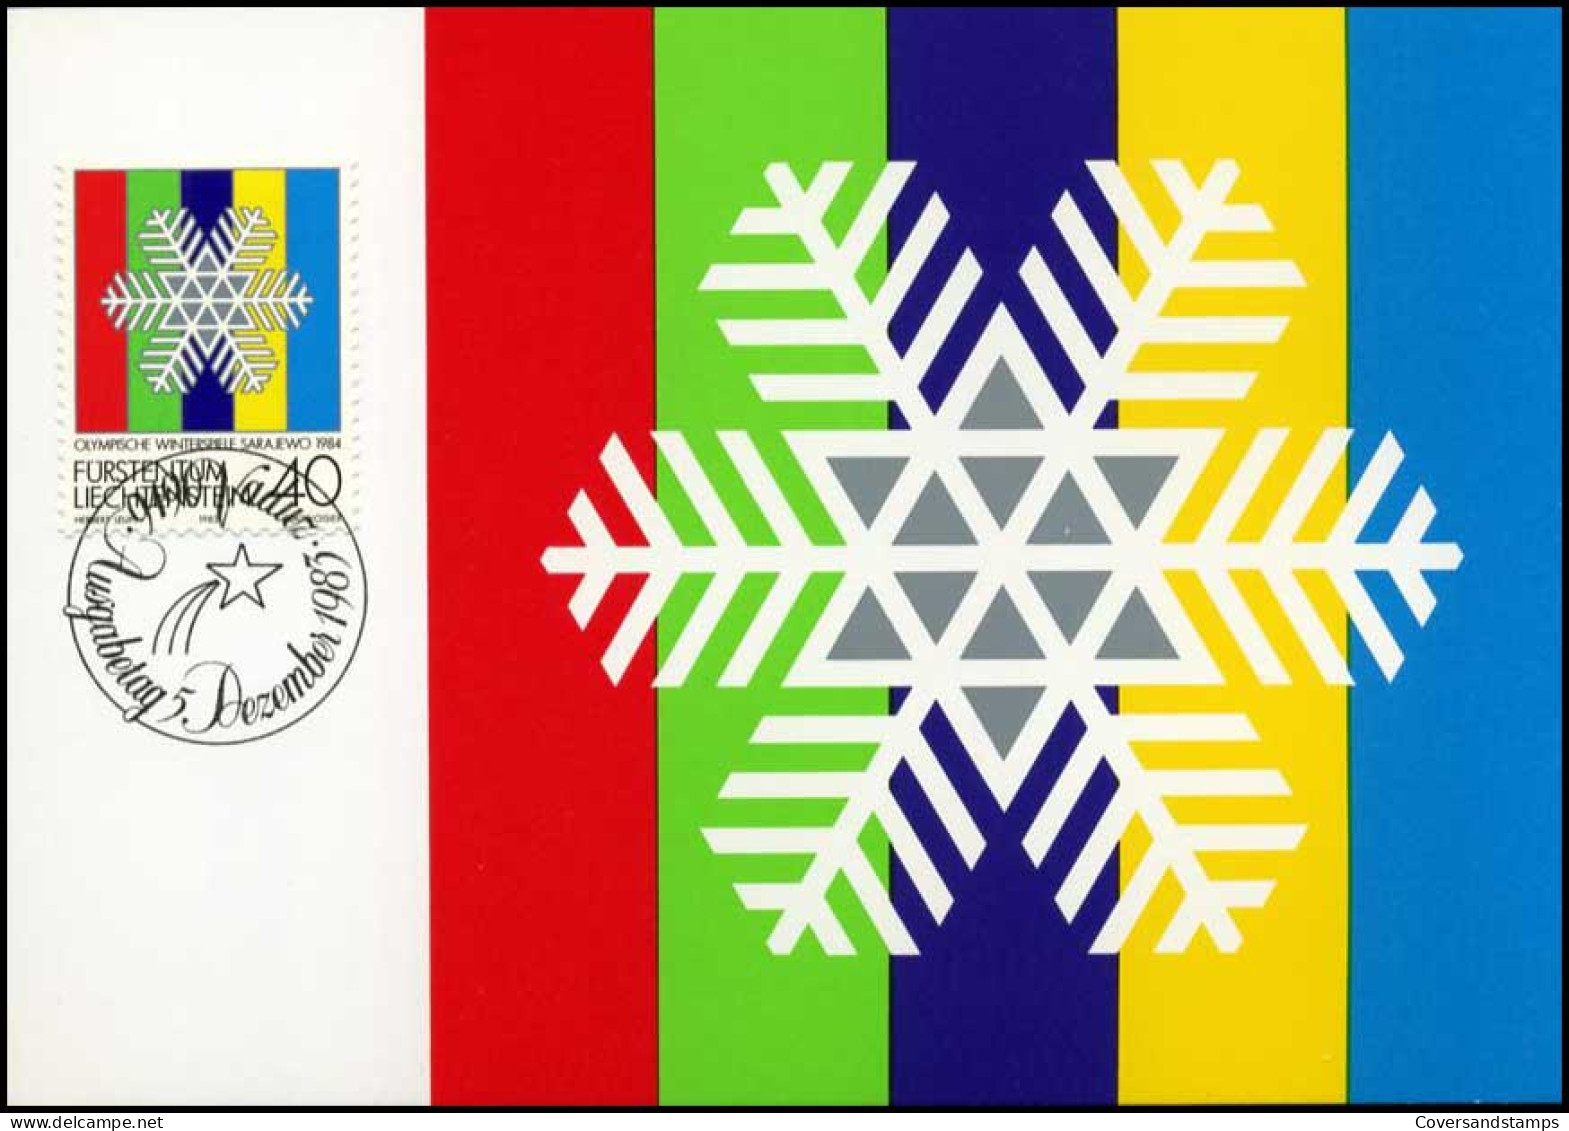  Liechtenstein - MK -  Olympische Winterspiele Sarajewo 1984 - Maximumkarten (MC)